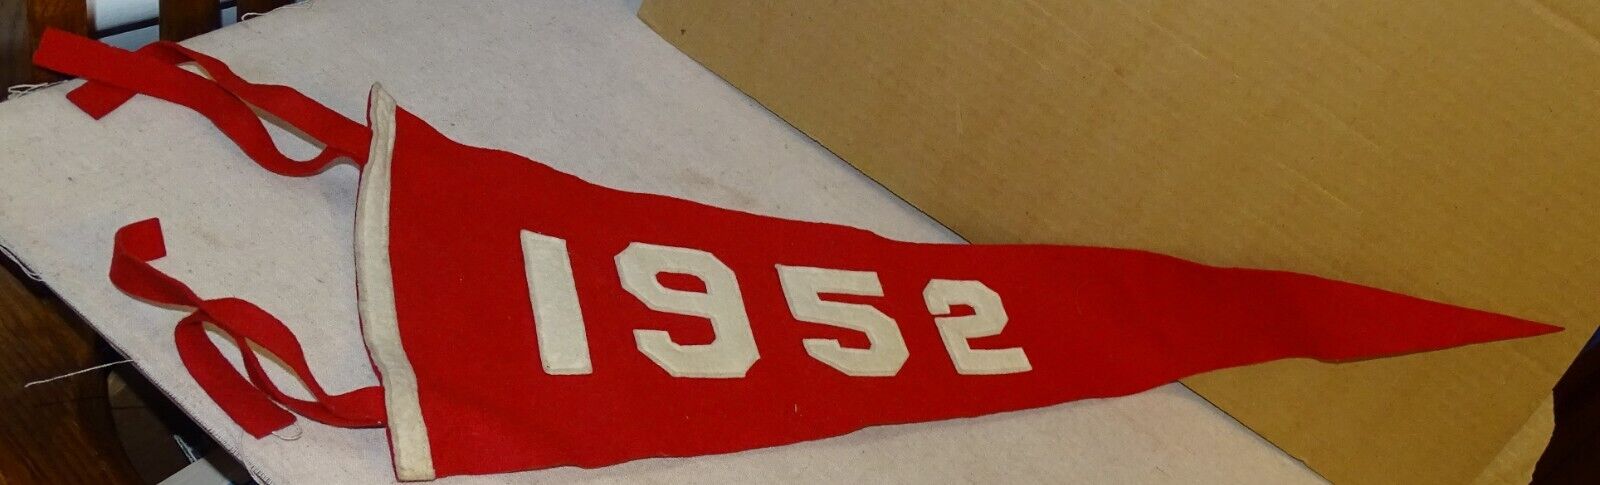 1952 Felt Pennant with sewn-on numbers - nice looking vintage flag